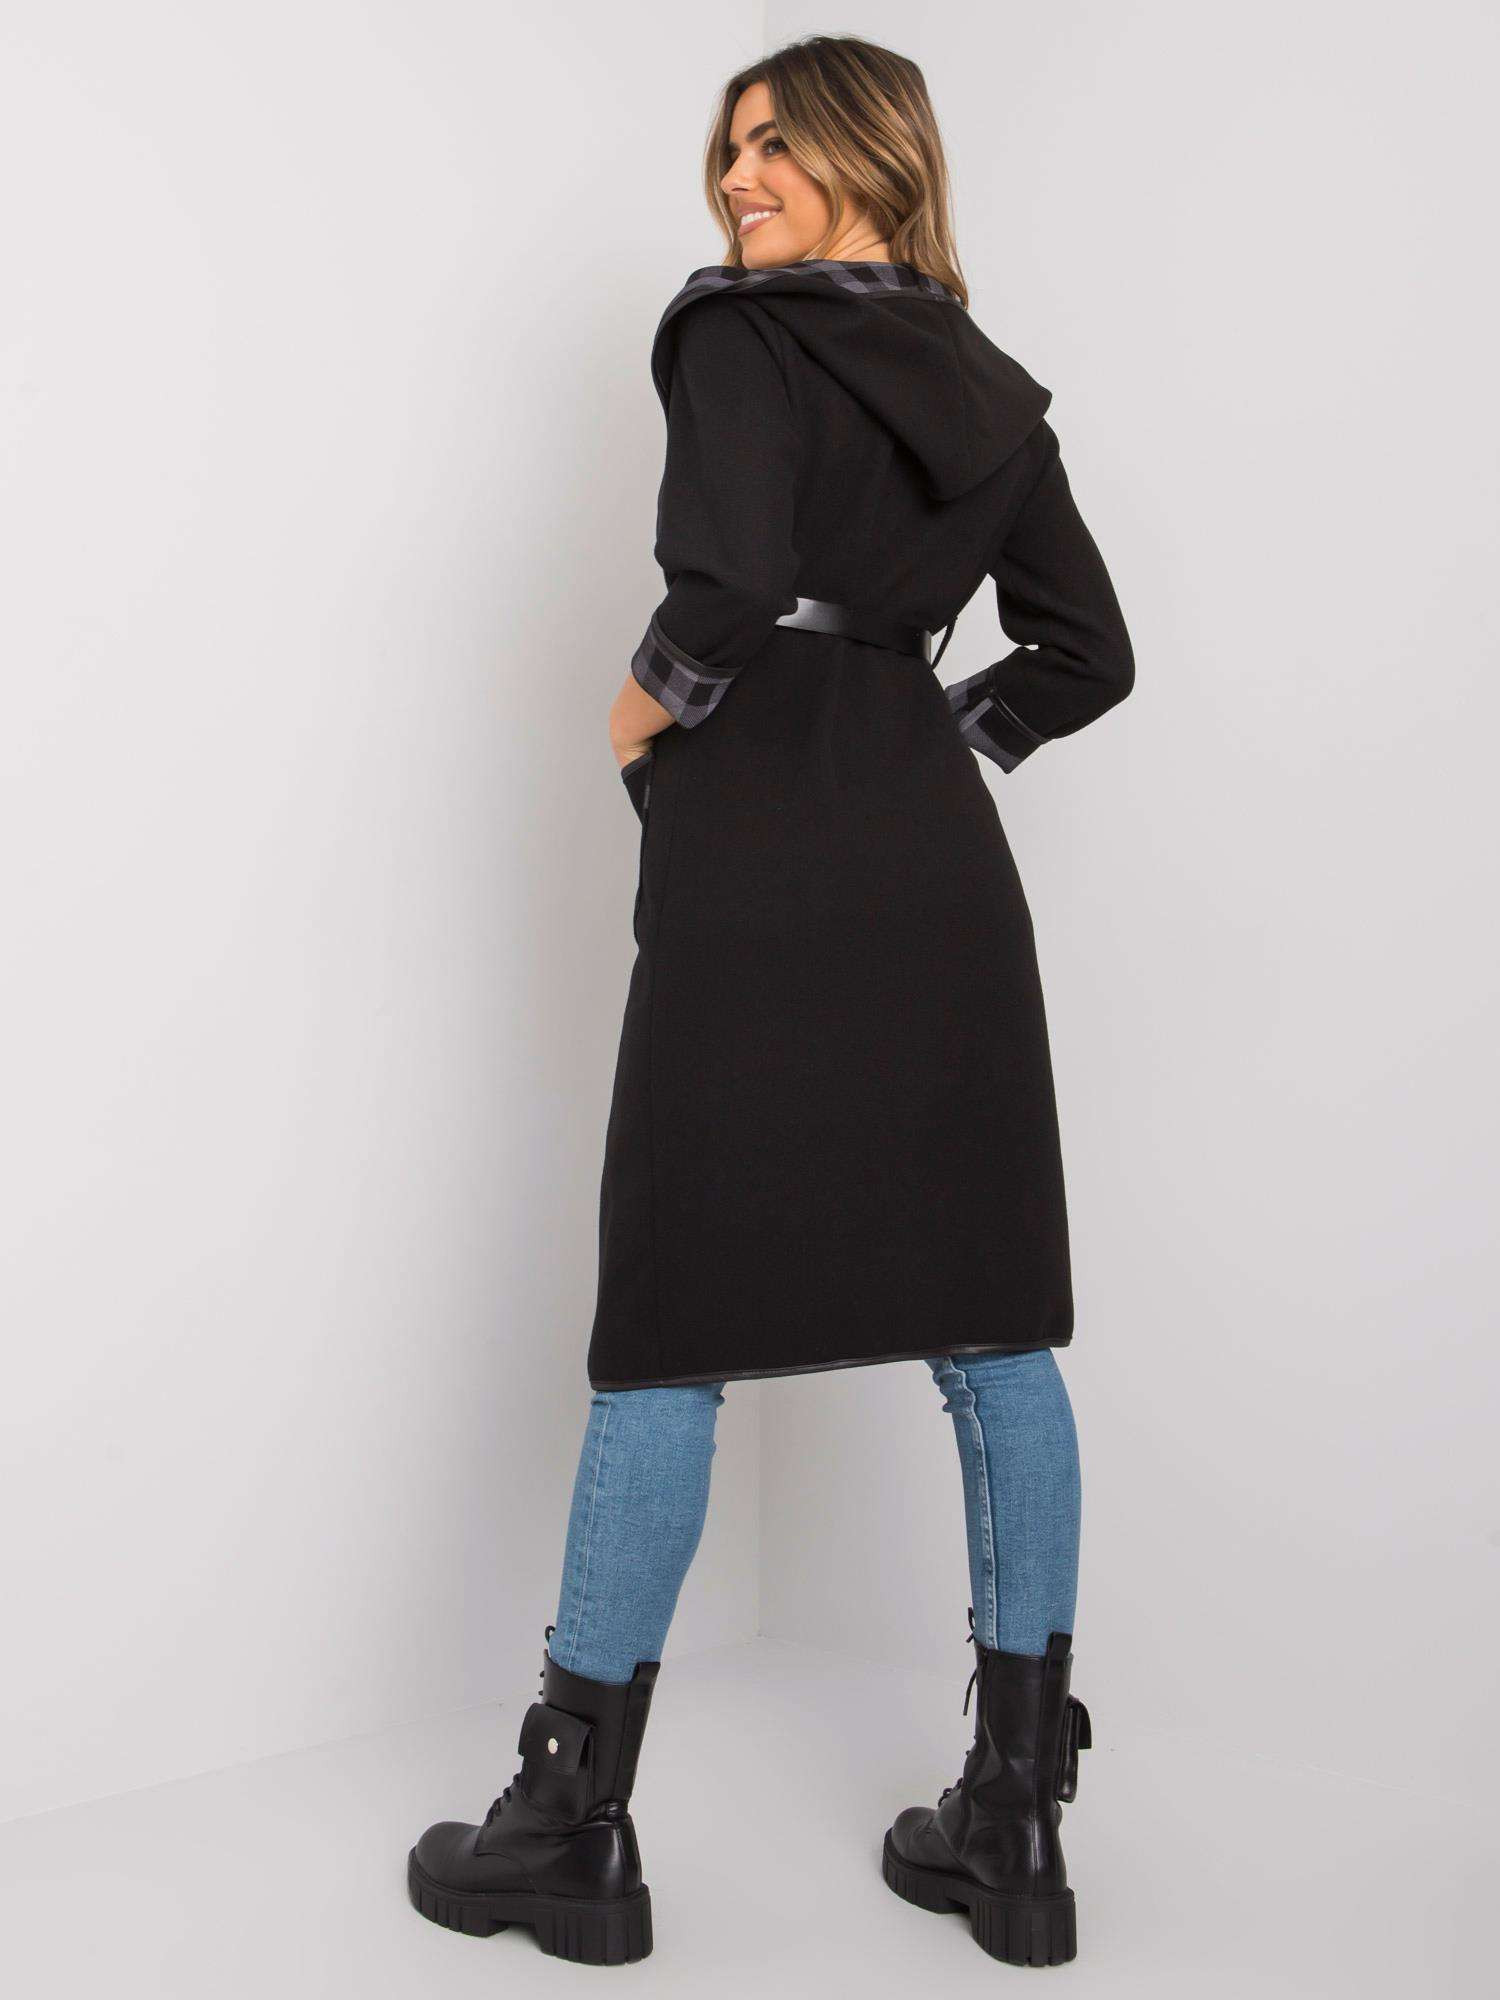 Dámský kabát DHJ EN A5721.40x černý jedna velikost